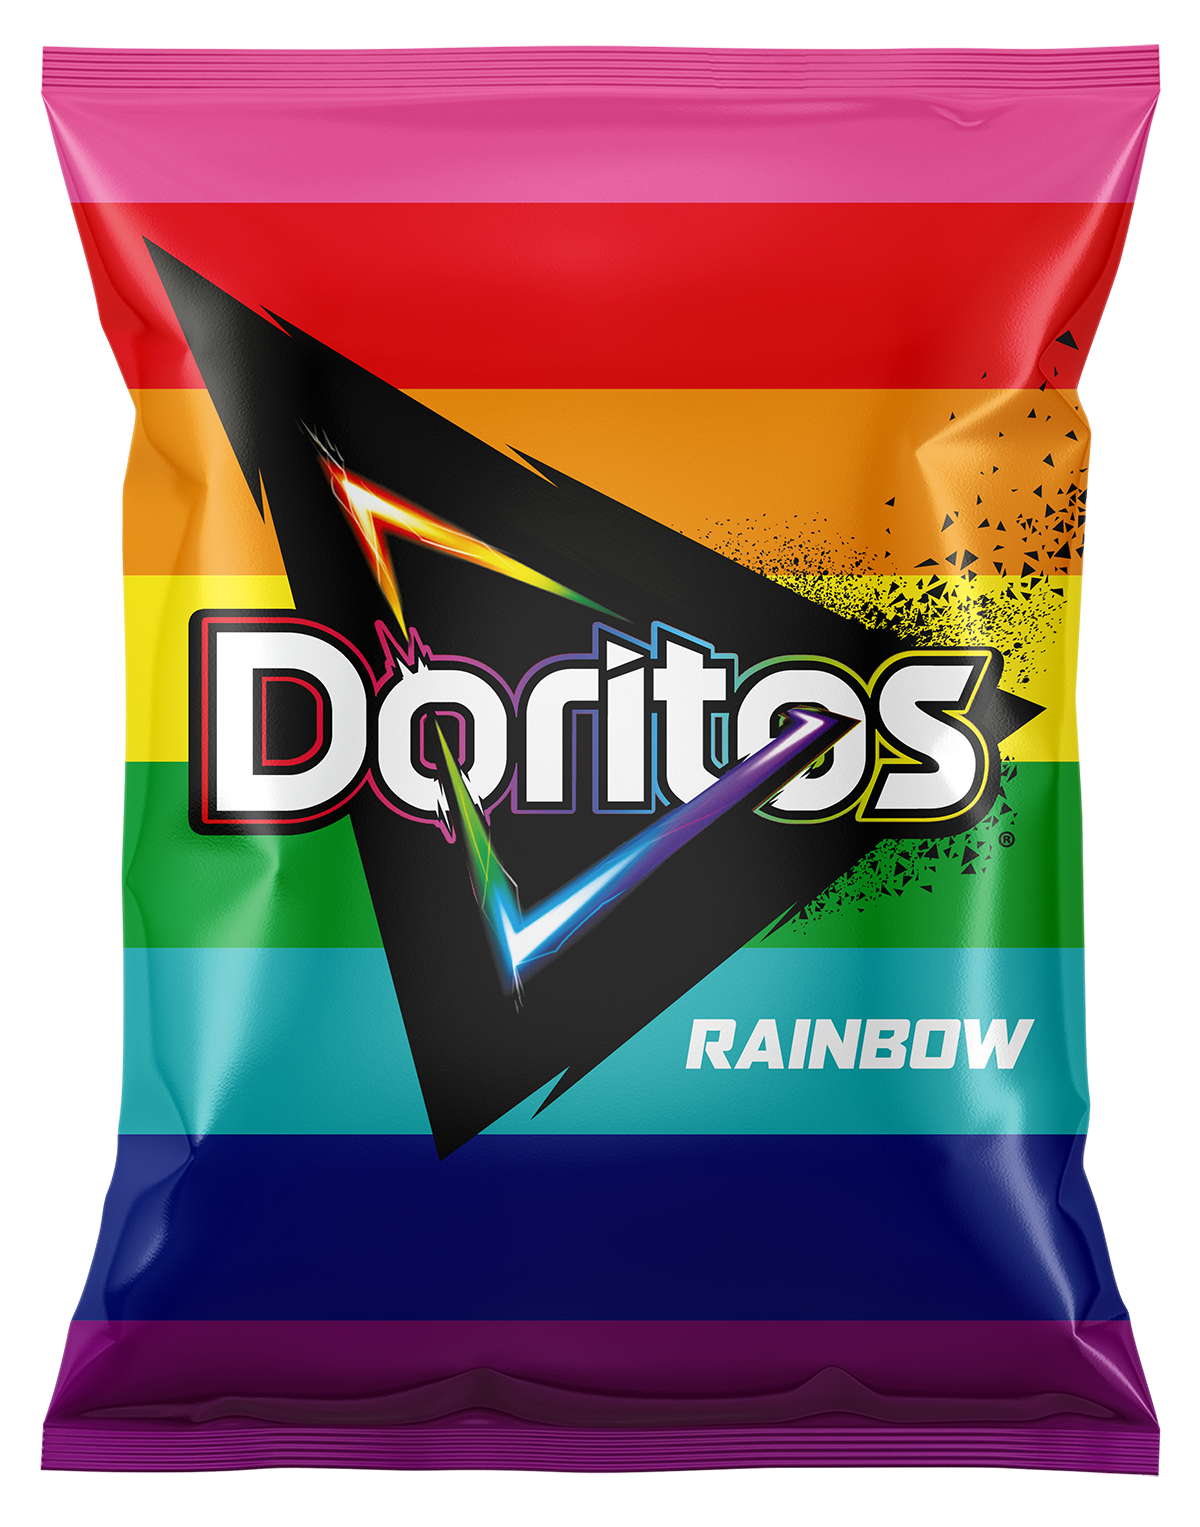 Embalagem e snack ganham as cores do arco-íris, símbolo da luta LGBTQIA+ (Foto: Divulgação)